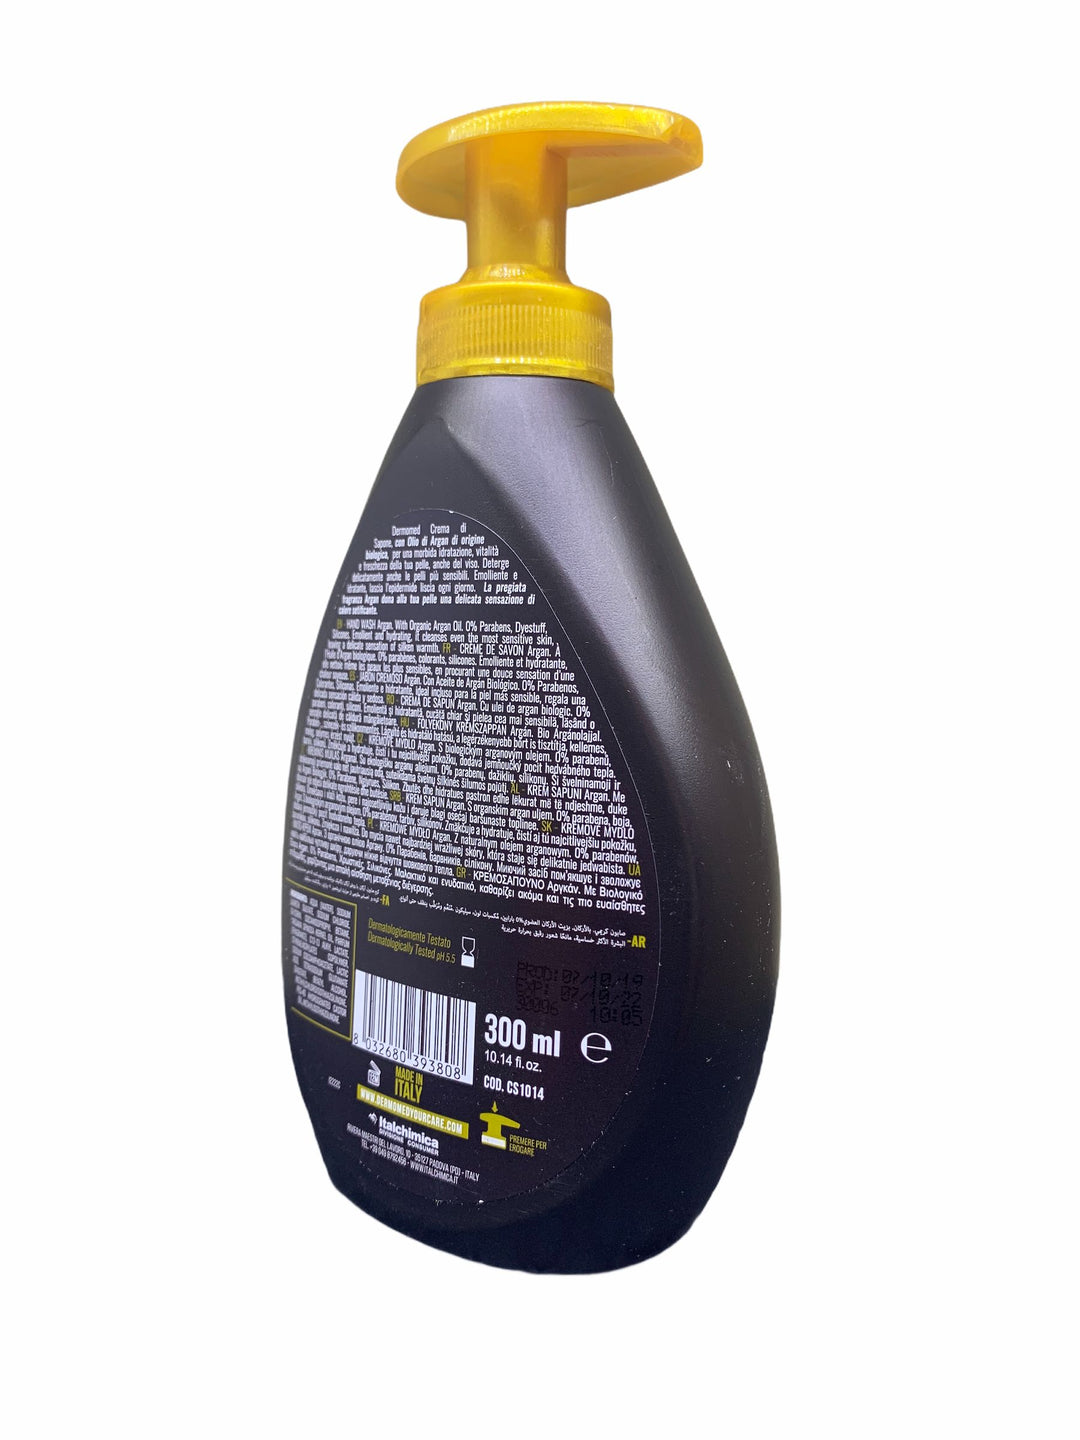 Dermomed sapone liquido dosatore 300 ml argan